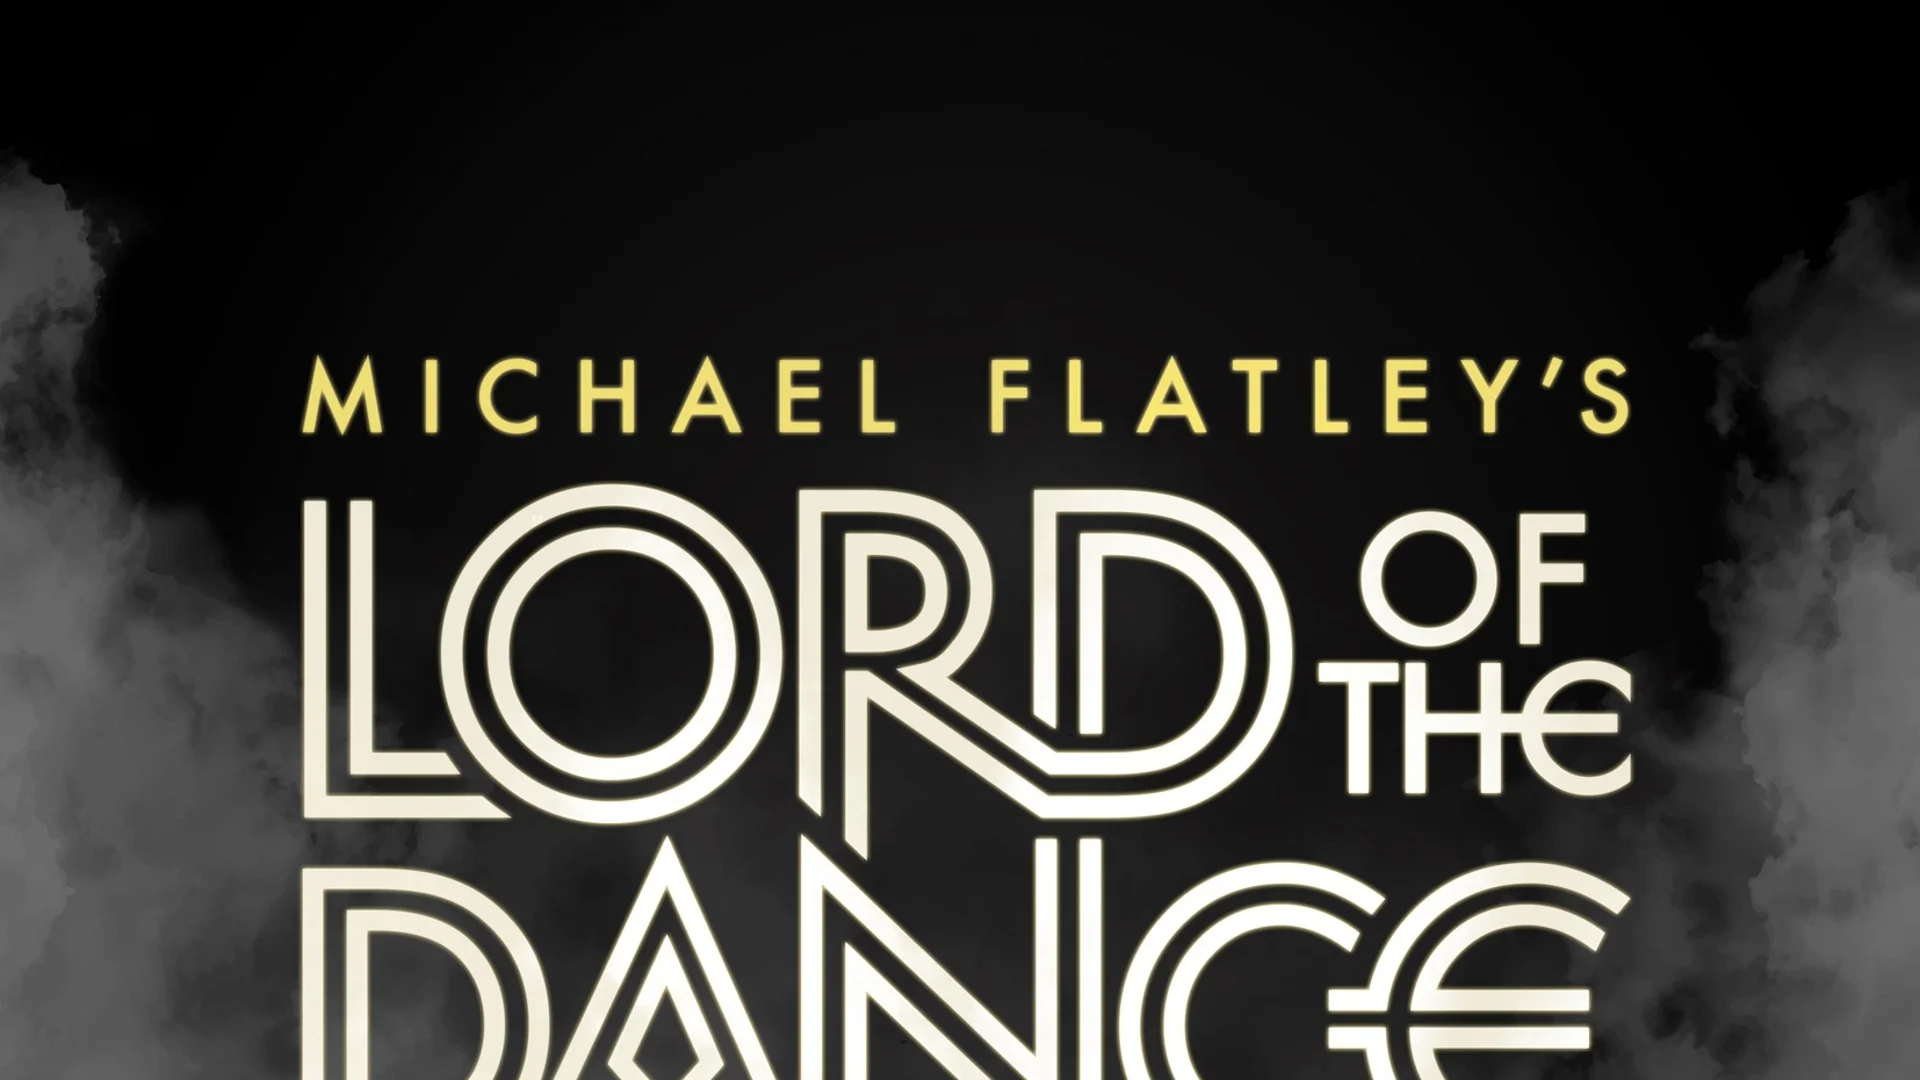 Lord of the Dance обявиха трета дата в София след два разпродадени спектакъла